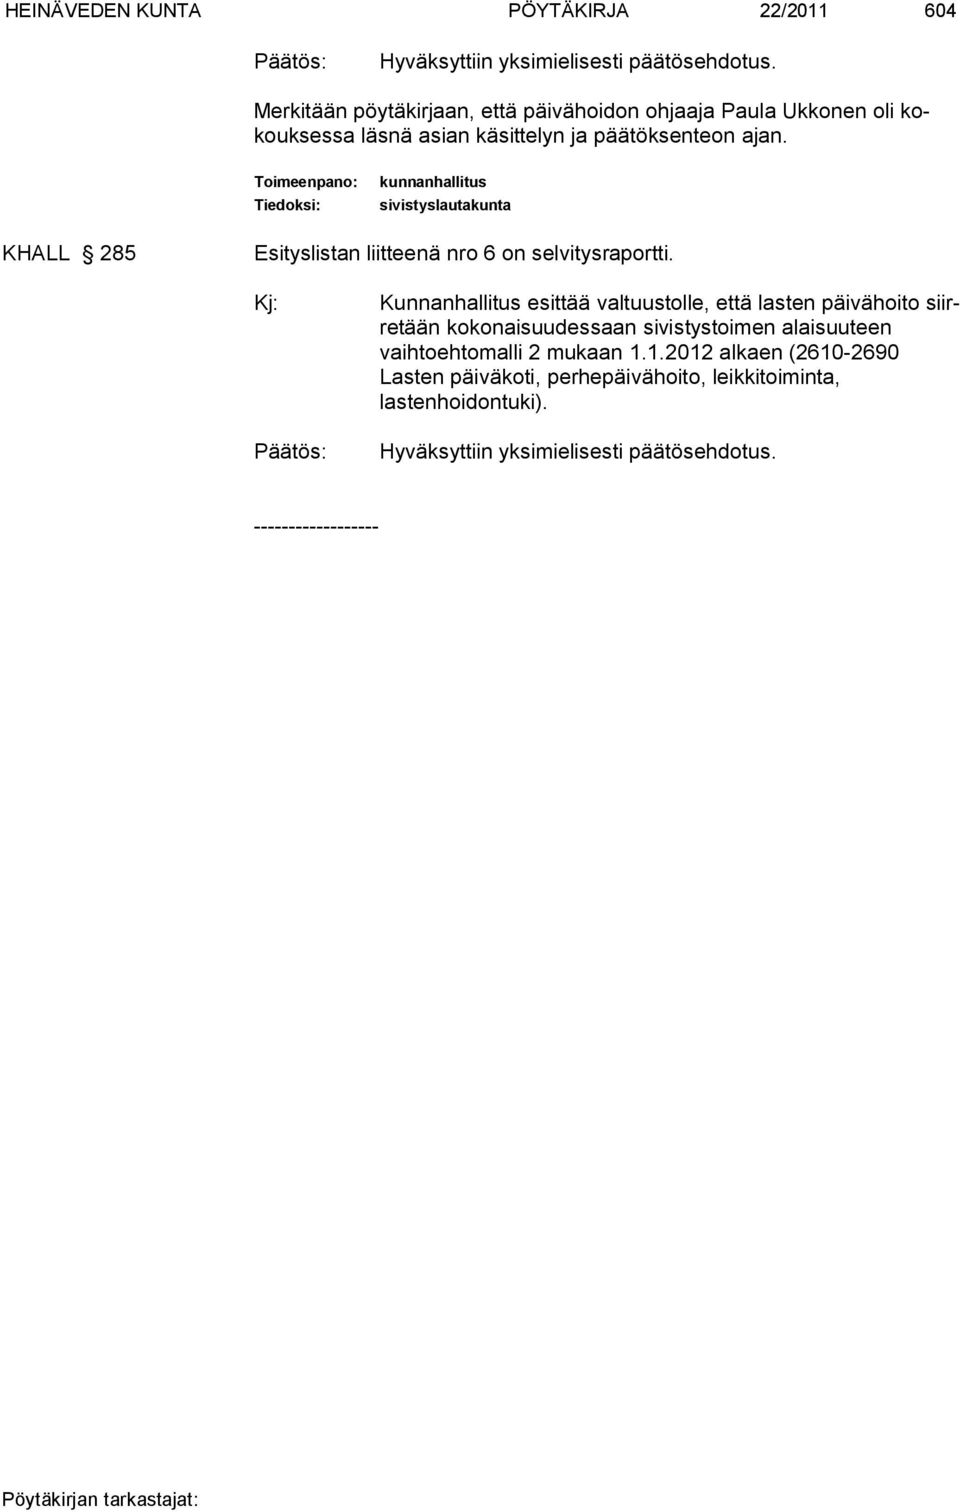 Toimeenpano: Tiedoksi: kunnanhallitus sivistyslautakunta KHALL 285 Esityslistan liitteenä nro 6 on selvitysraportti.